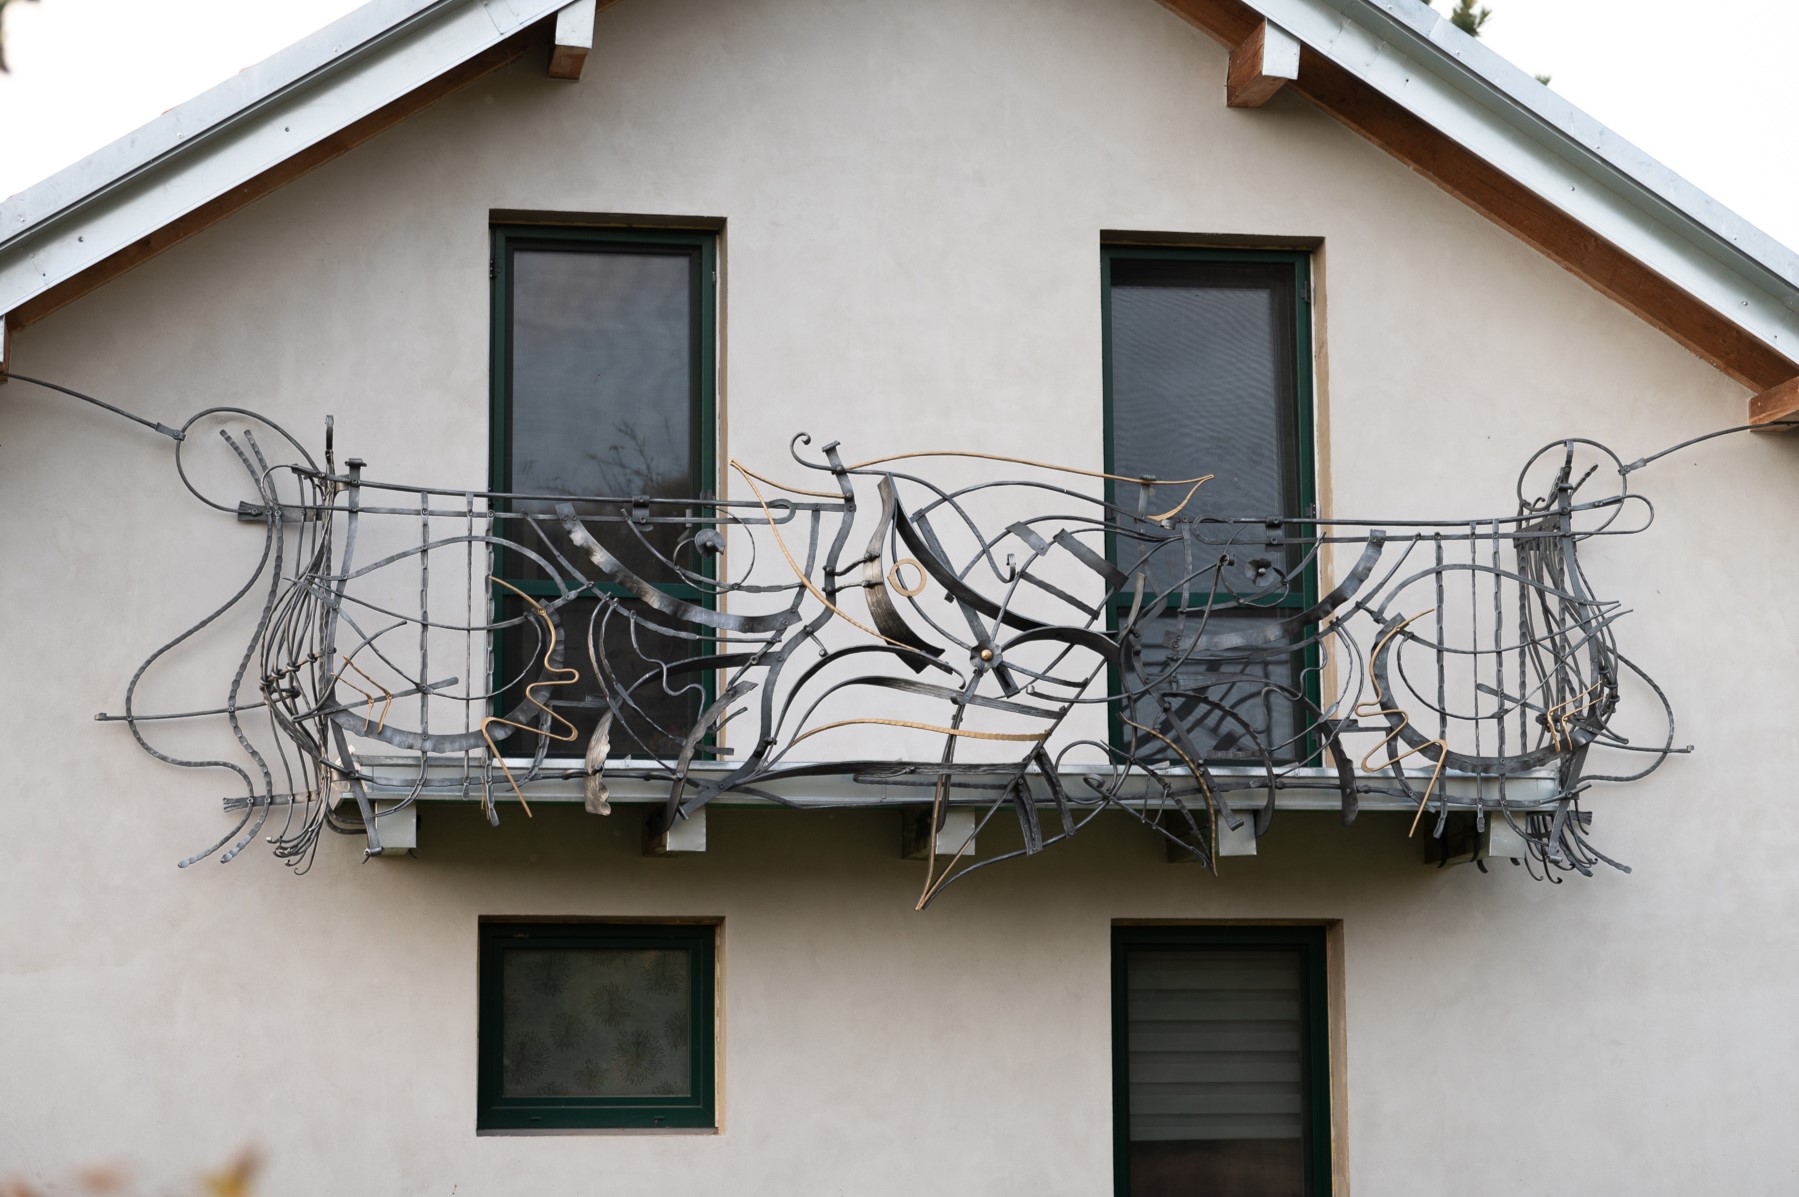 Kované balkonové zábradlí, inspirace příroda, secese, baroko